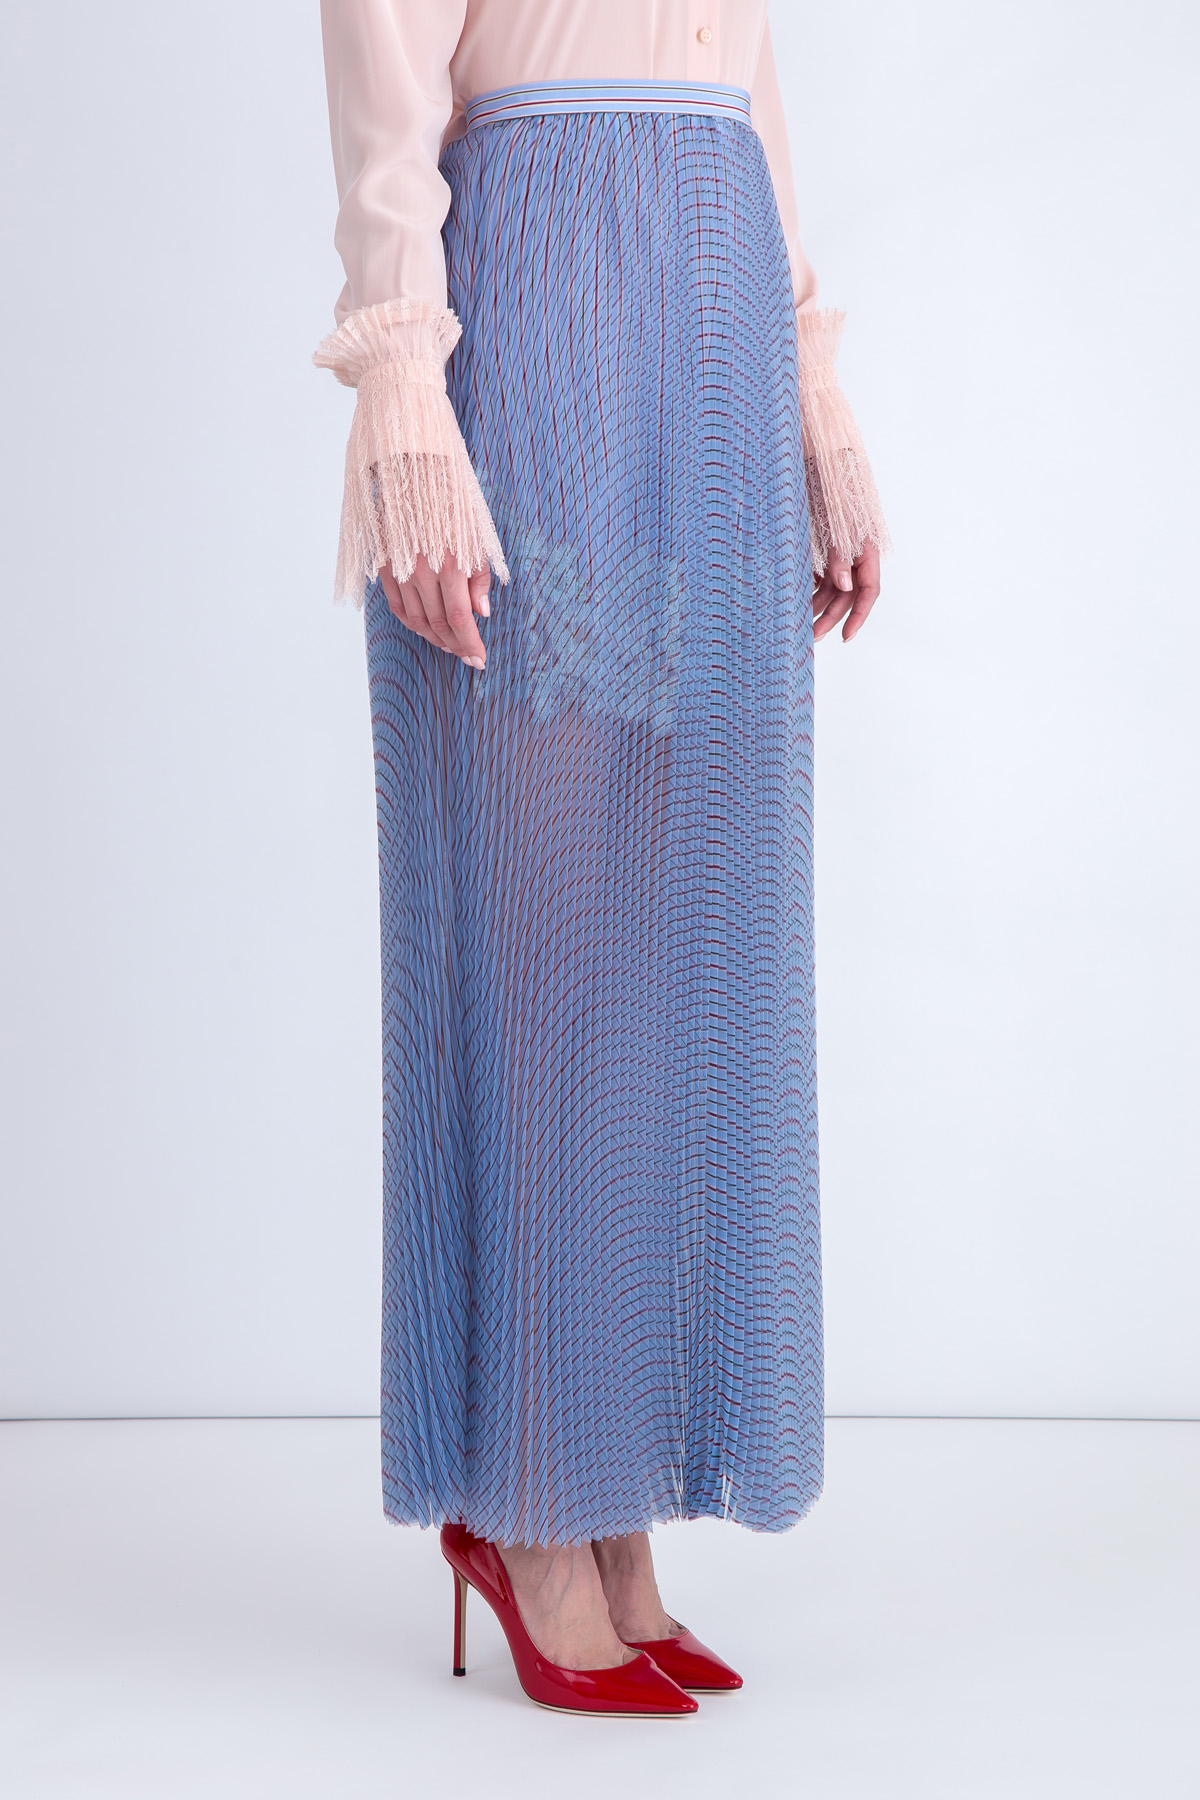 Плиссированная юбка-миди из органзы в полоску ERMANNO SCERVINO, цвет голубой, размер 40 - фото 3